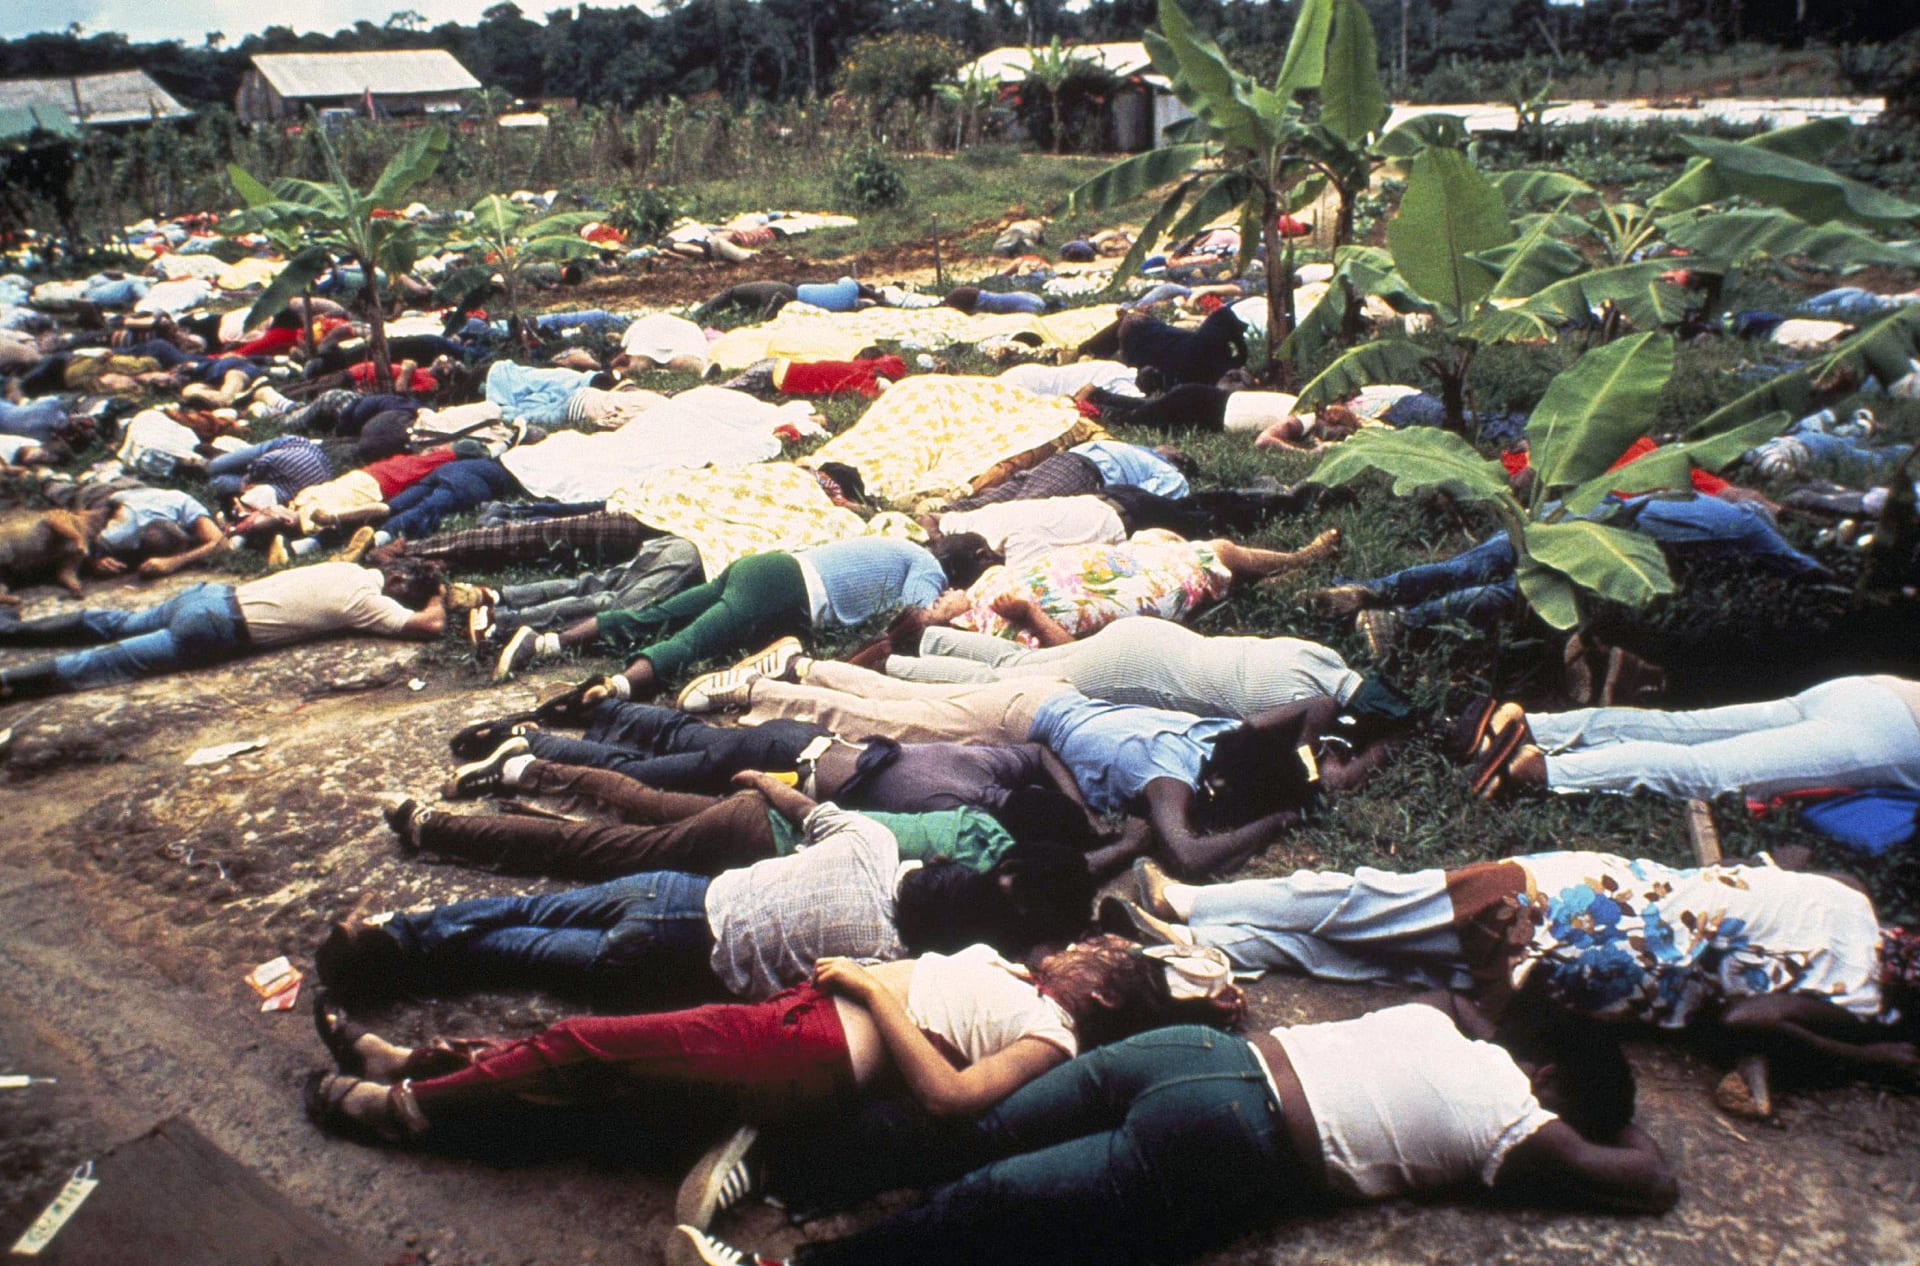 Jonestown posetý mrtvými těly členů sekty